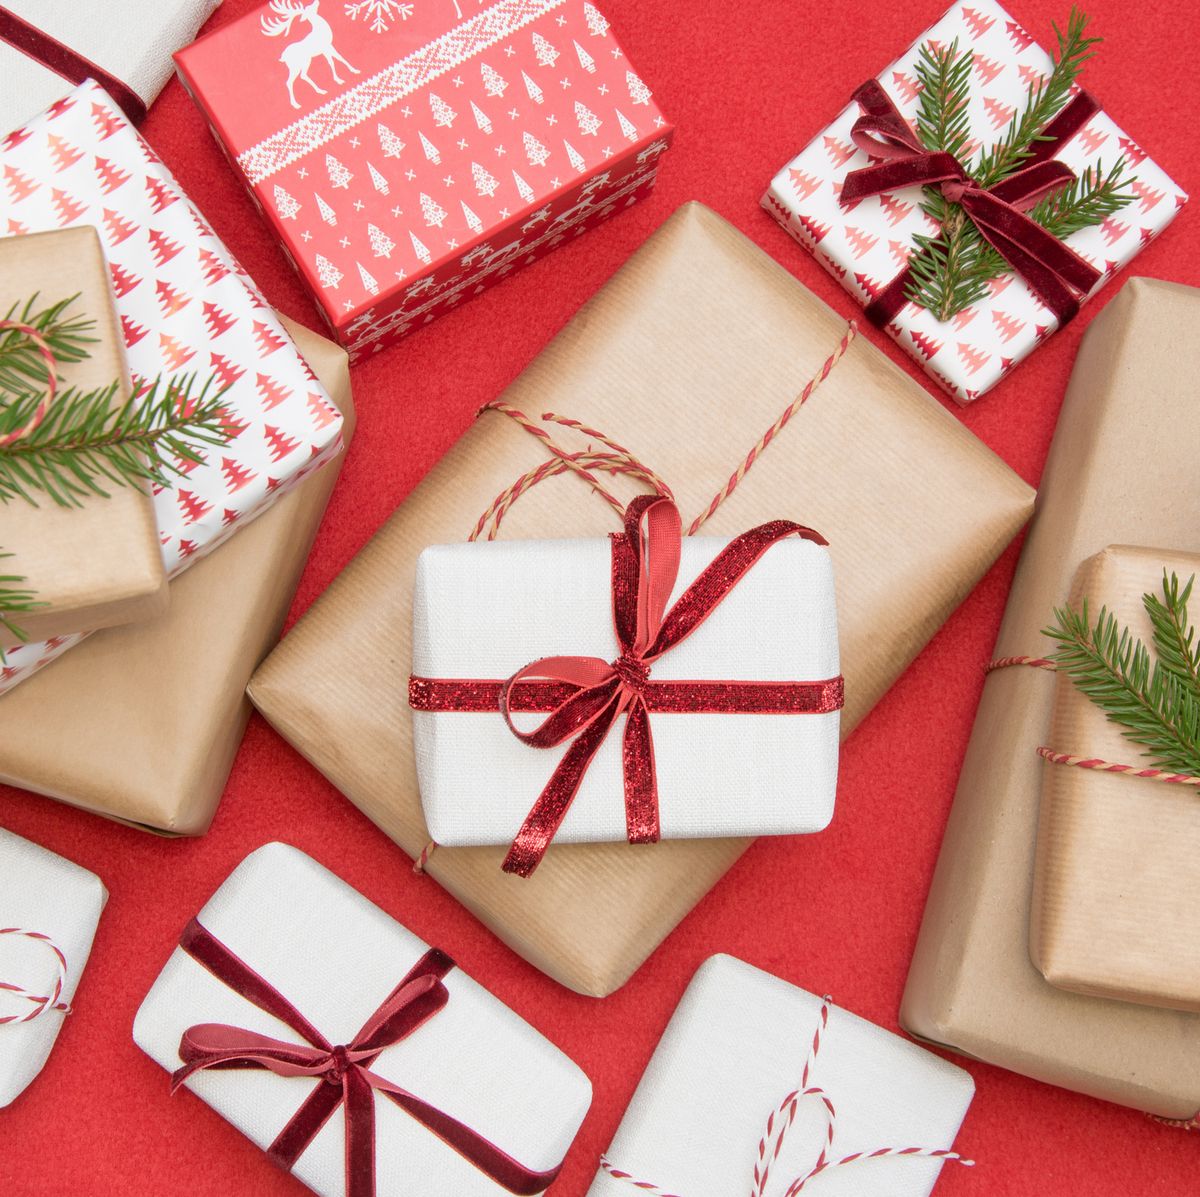 10 Genius Gift Wrap Storage Ideas